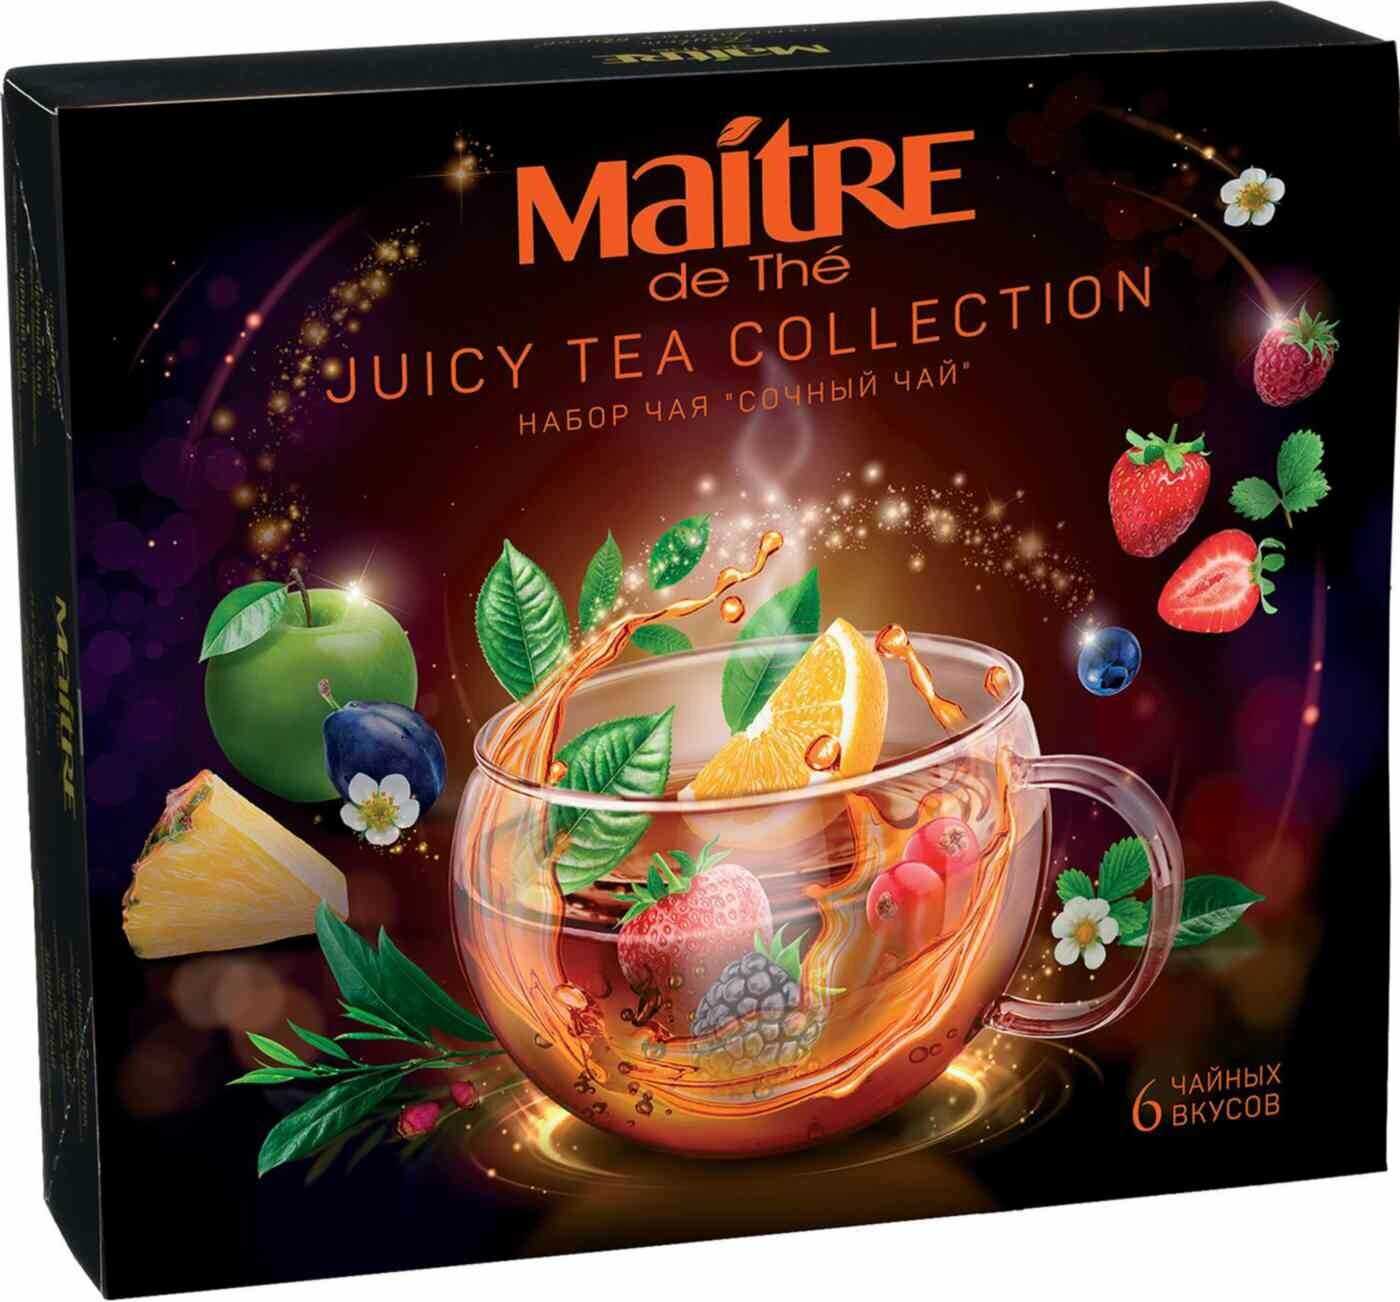 Набор чай в пакетиках ассорти MAITRE de The "сочный ЧАЙ" 6 вкусов*5 пакетиков, 30 шт, мэтр подарочный набор 60 г